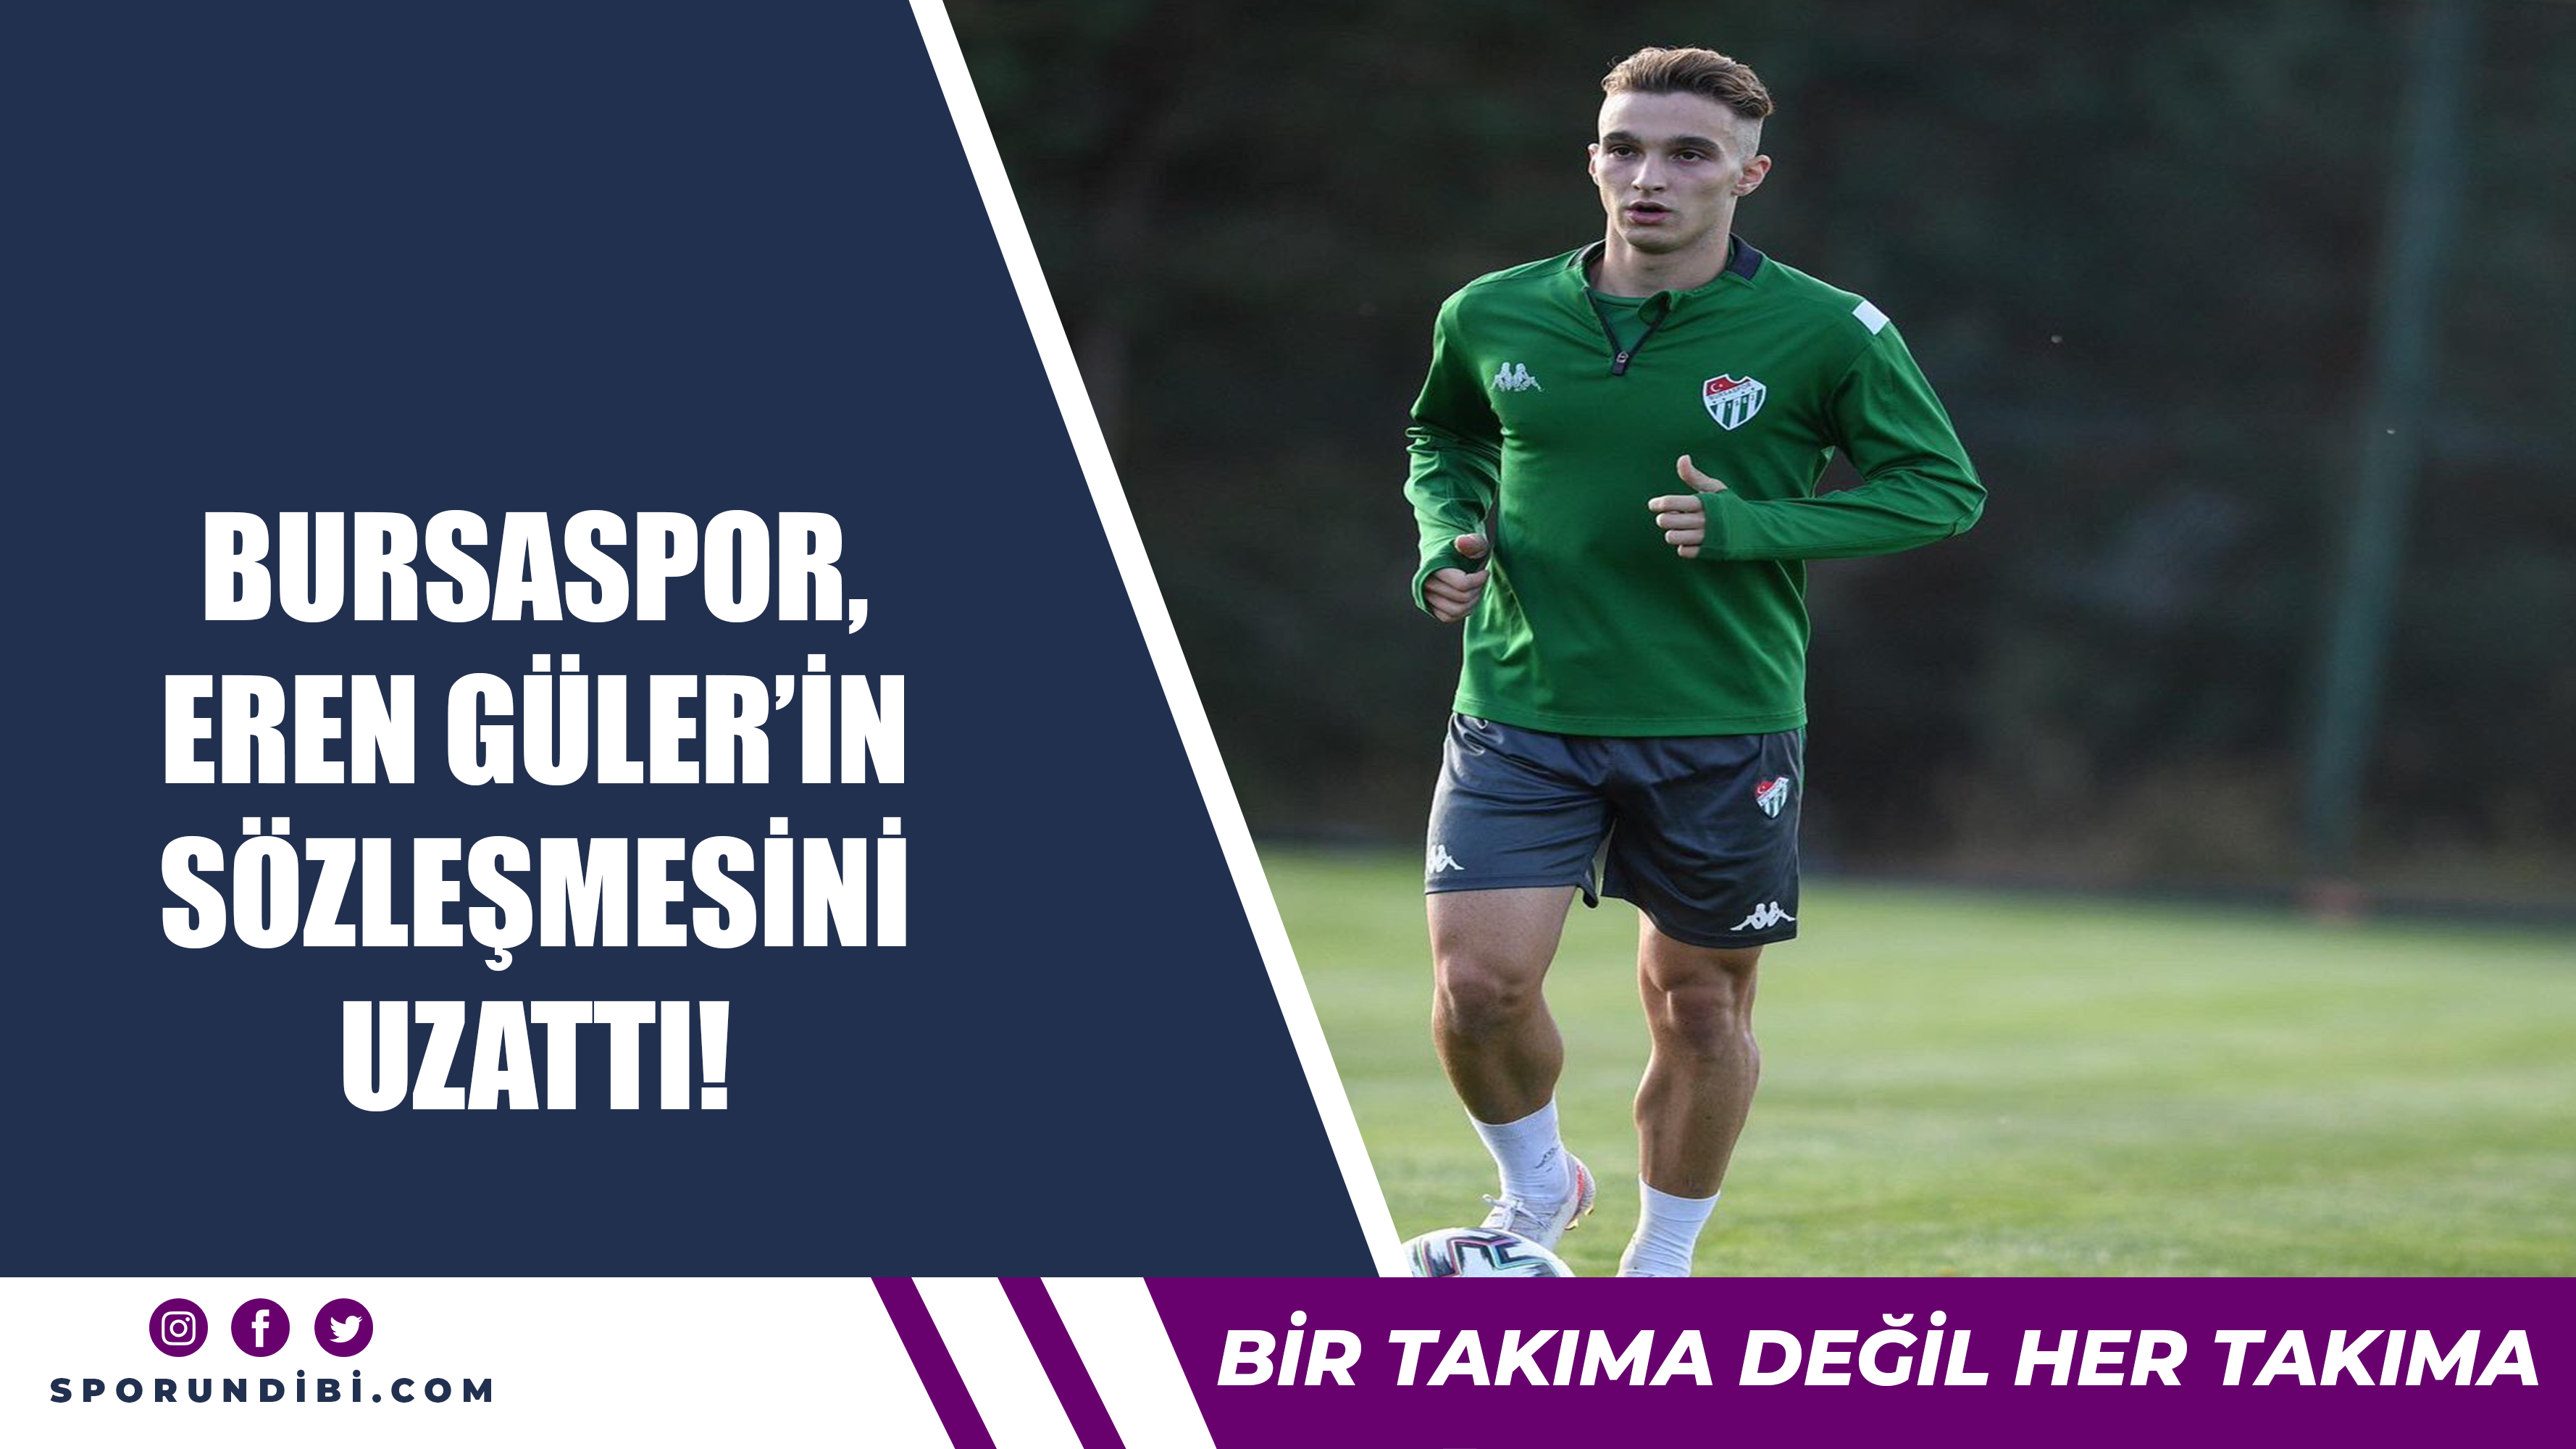 Bursaspor, Eren Güler'in sözleşmesini uzattı!